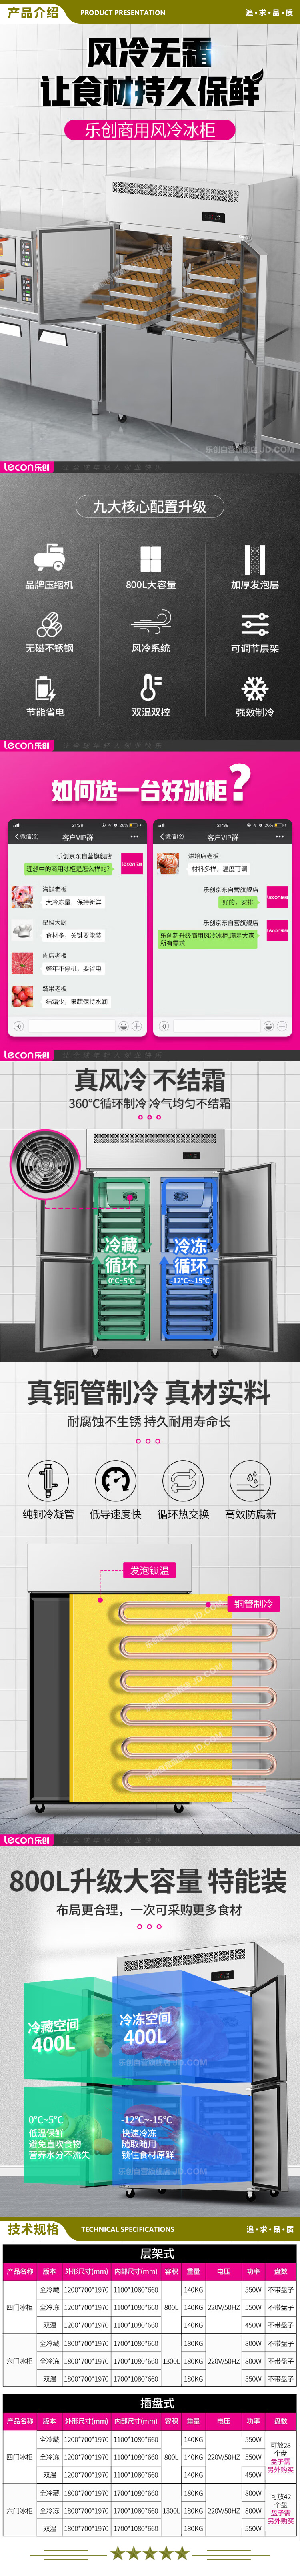 乐创(lecon) LC-LMBG01 冷藏商用六门冰柜厨房冰箱双温冷藏冷冻餐饮立式后厨保鲜柜冷柜风冷层架式  2.jpg